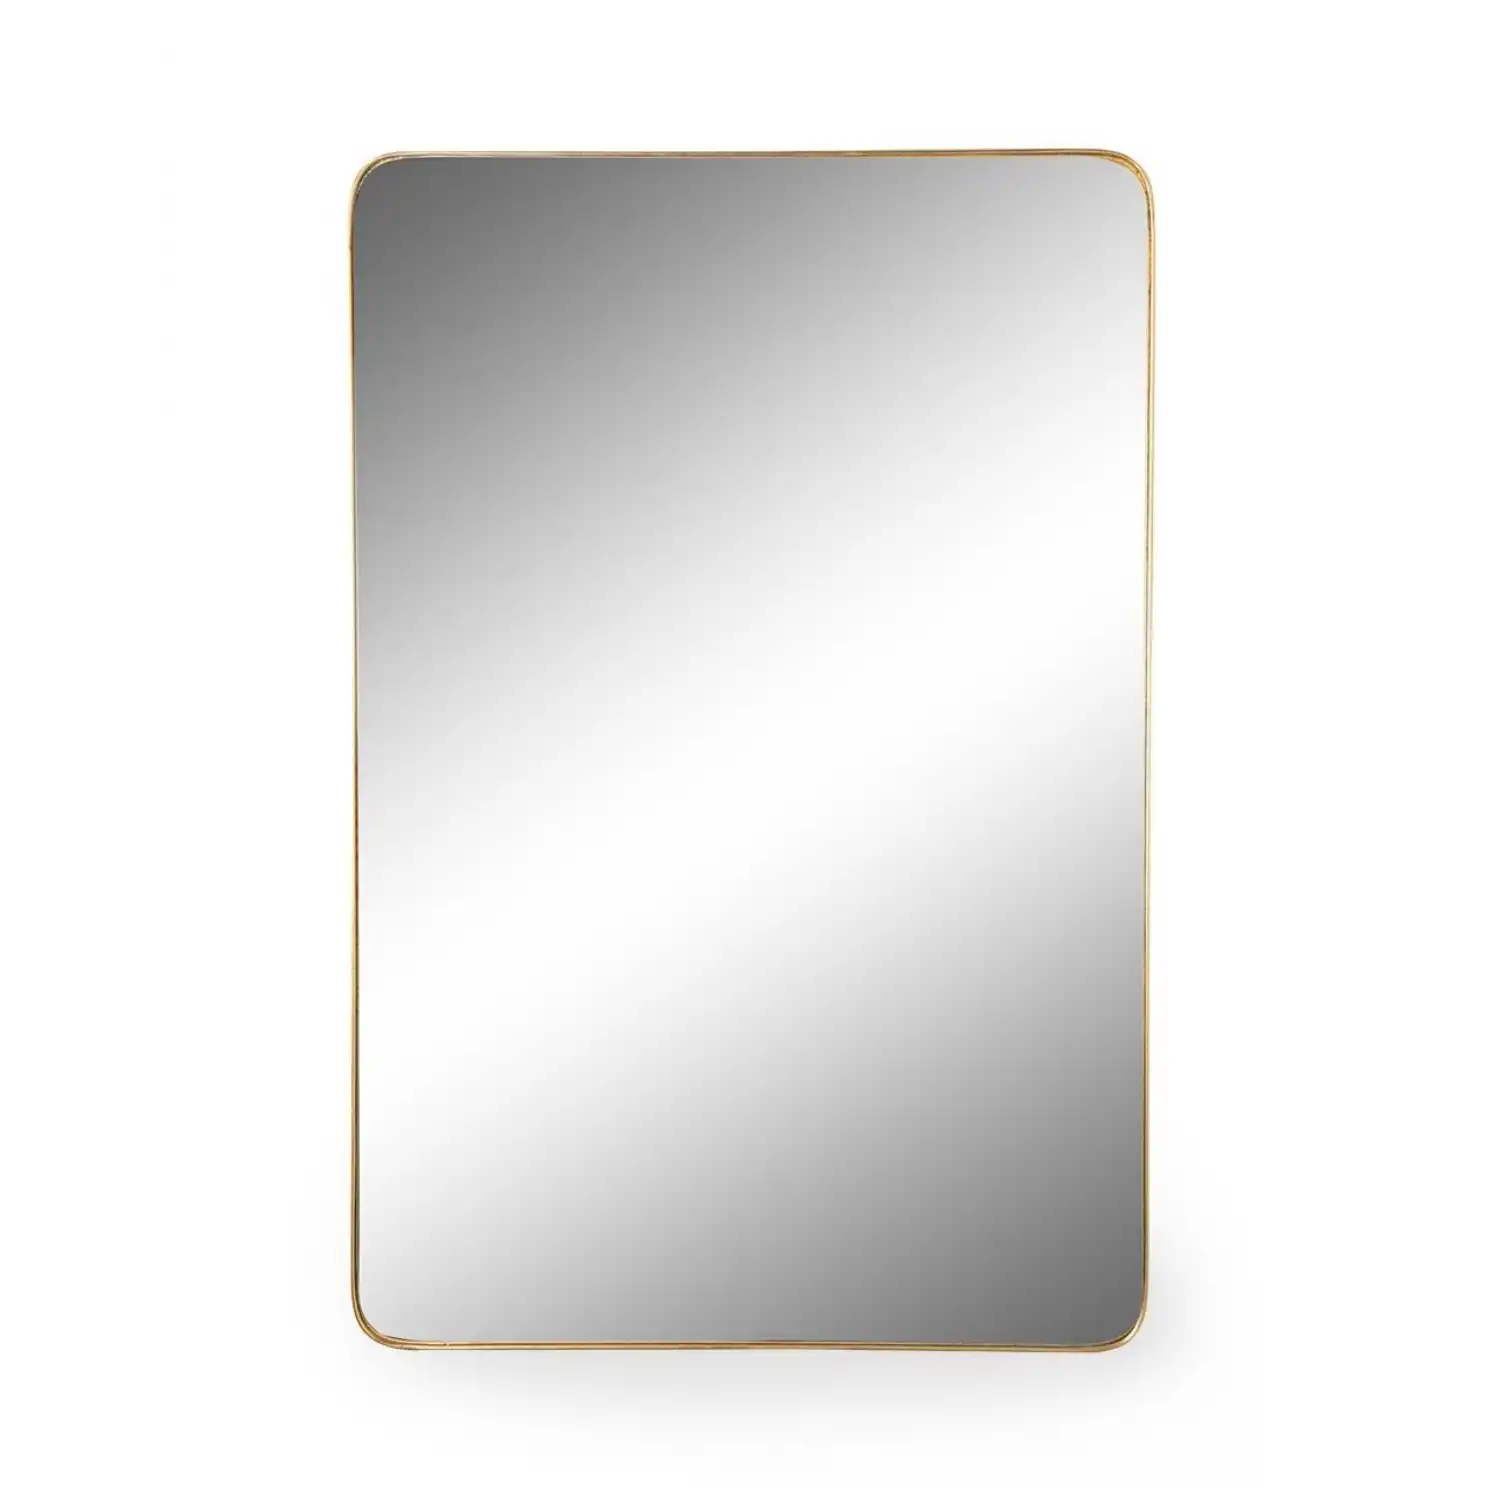 Large Gold Rectangular Thin Metal Wall Mirror